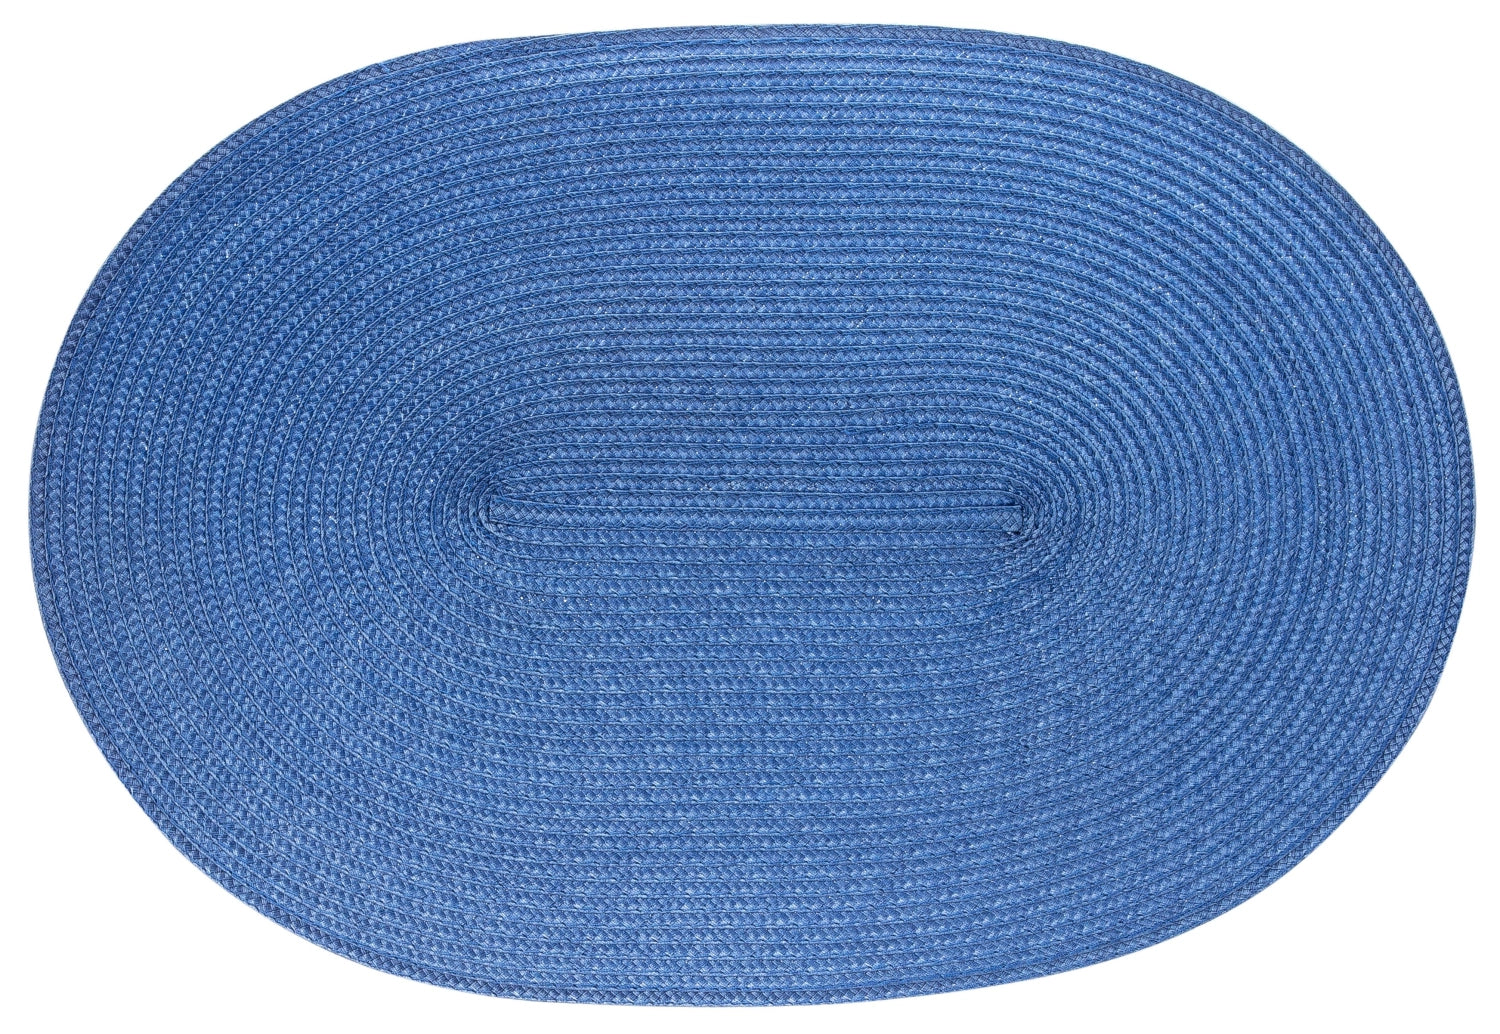 Tischset oval königsblau 45x31cm - KAQTU Design